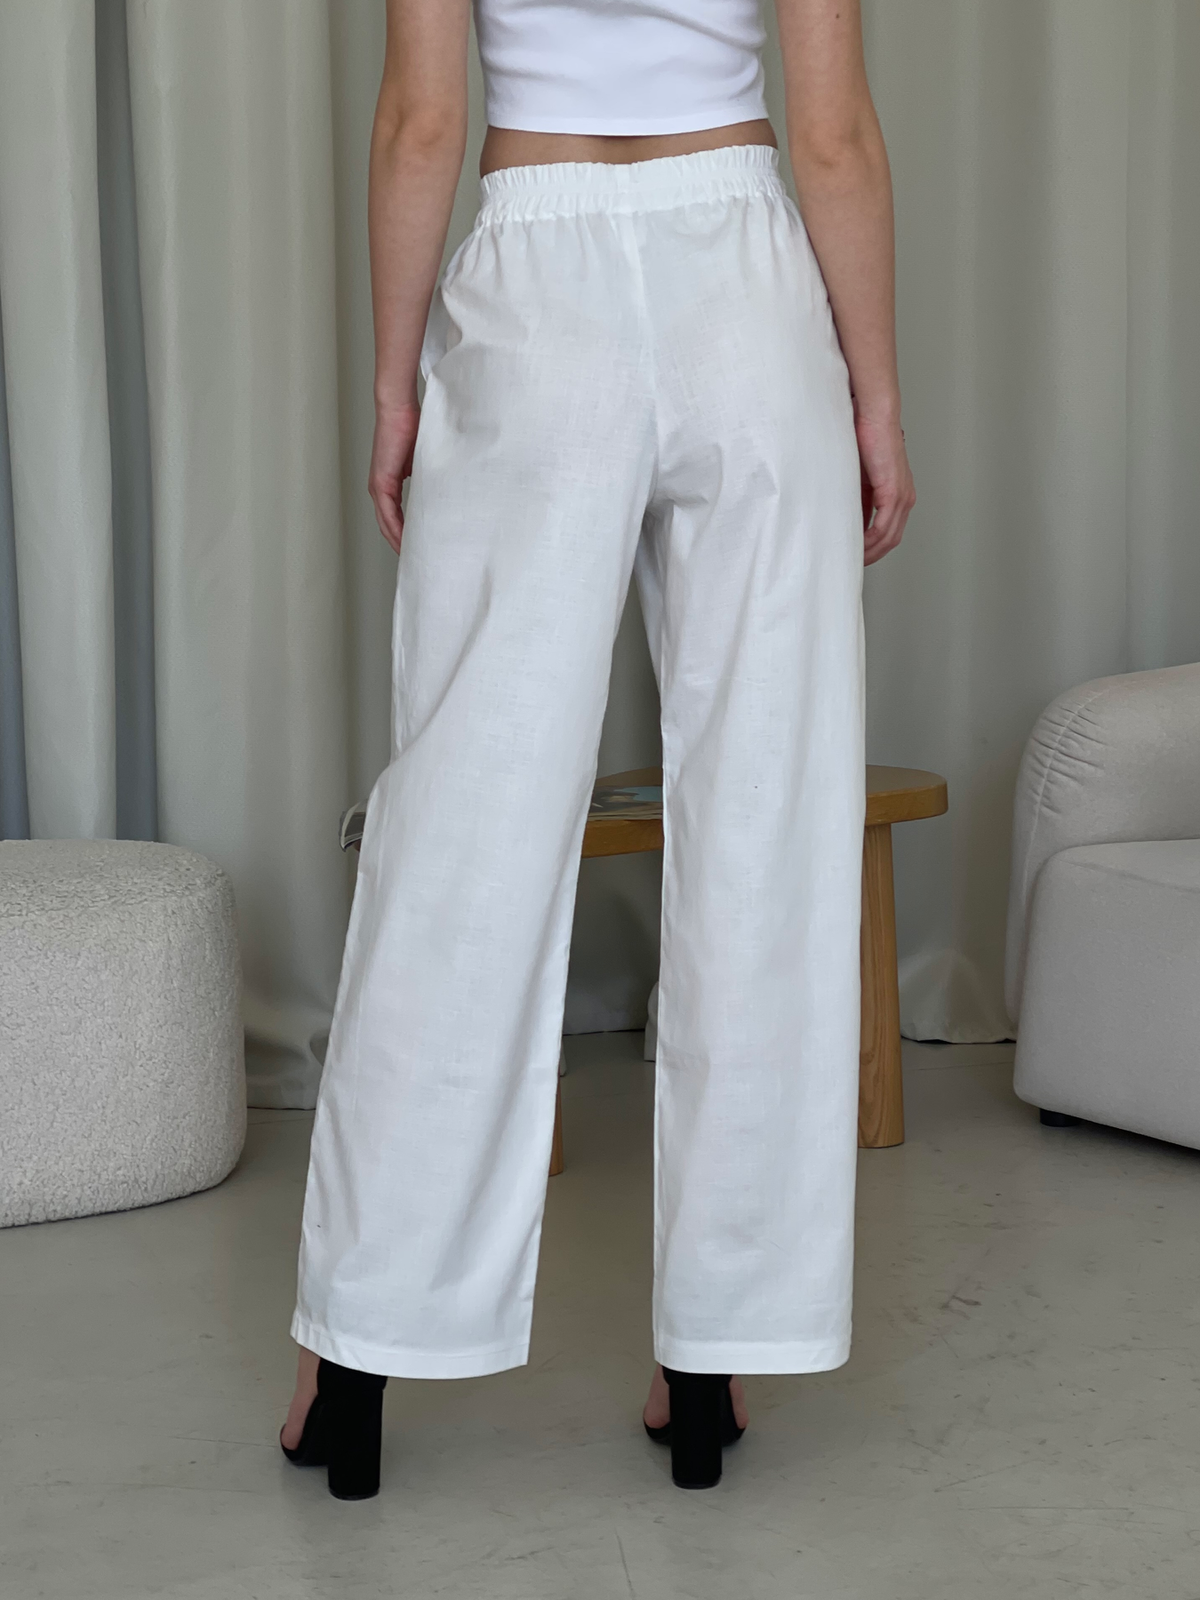 Льняные штаны палаццо белые Merlini Торио 600001202 размер 42-44 (S-M)